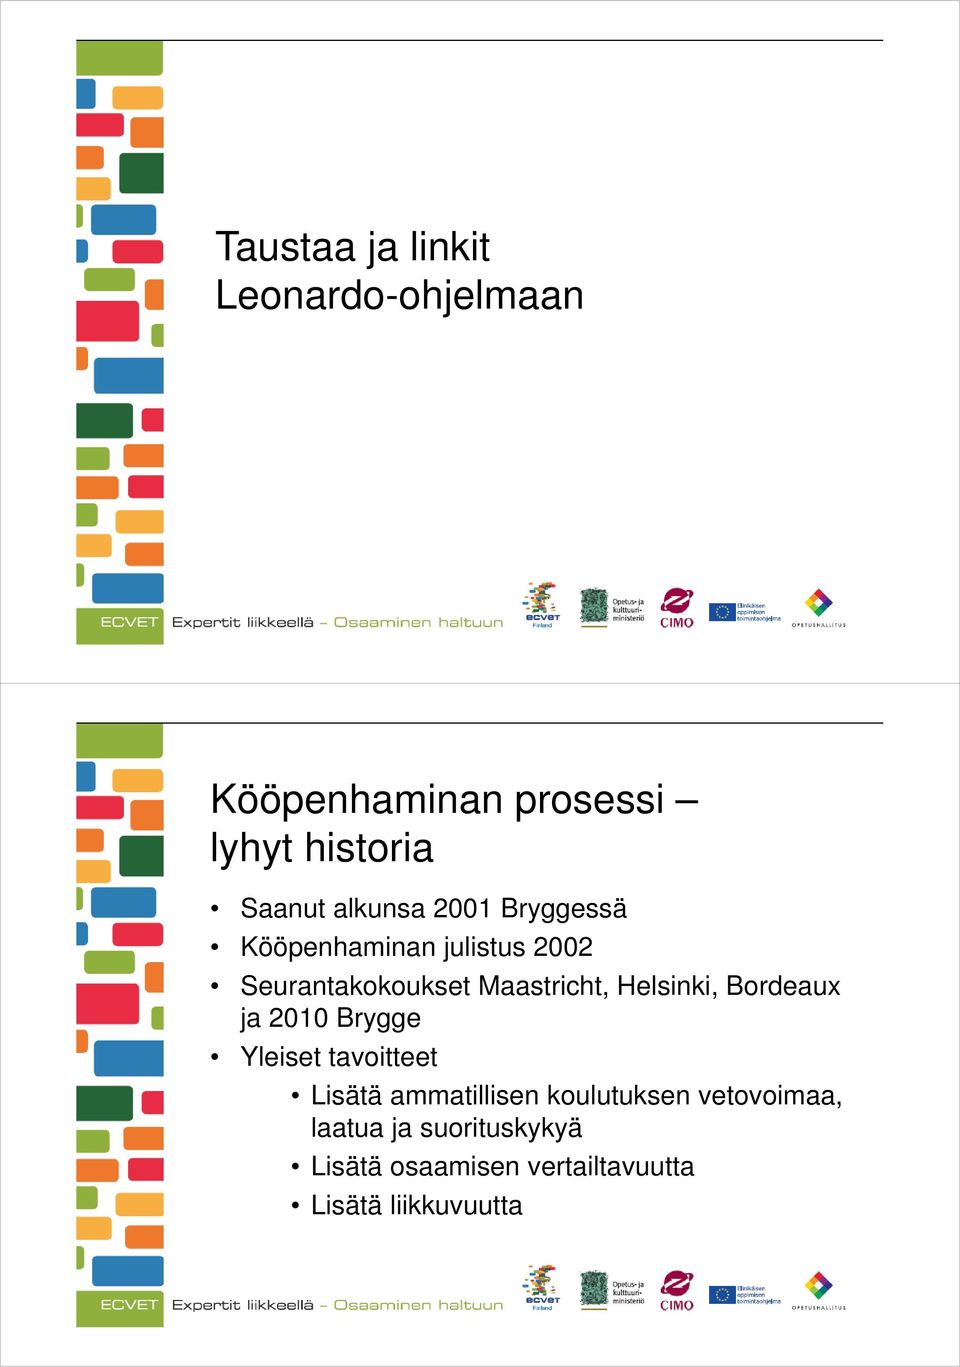 Helsinki, Bordeaux ja 2010 Brygge Yleiset tavoitteet Lisätä ammatillisen